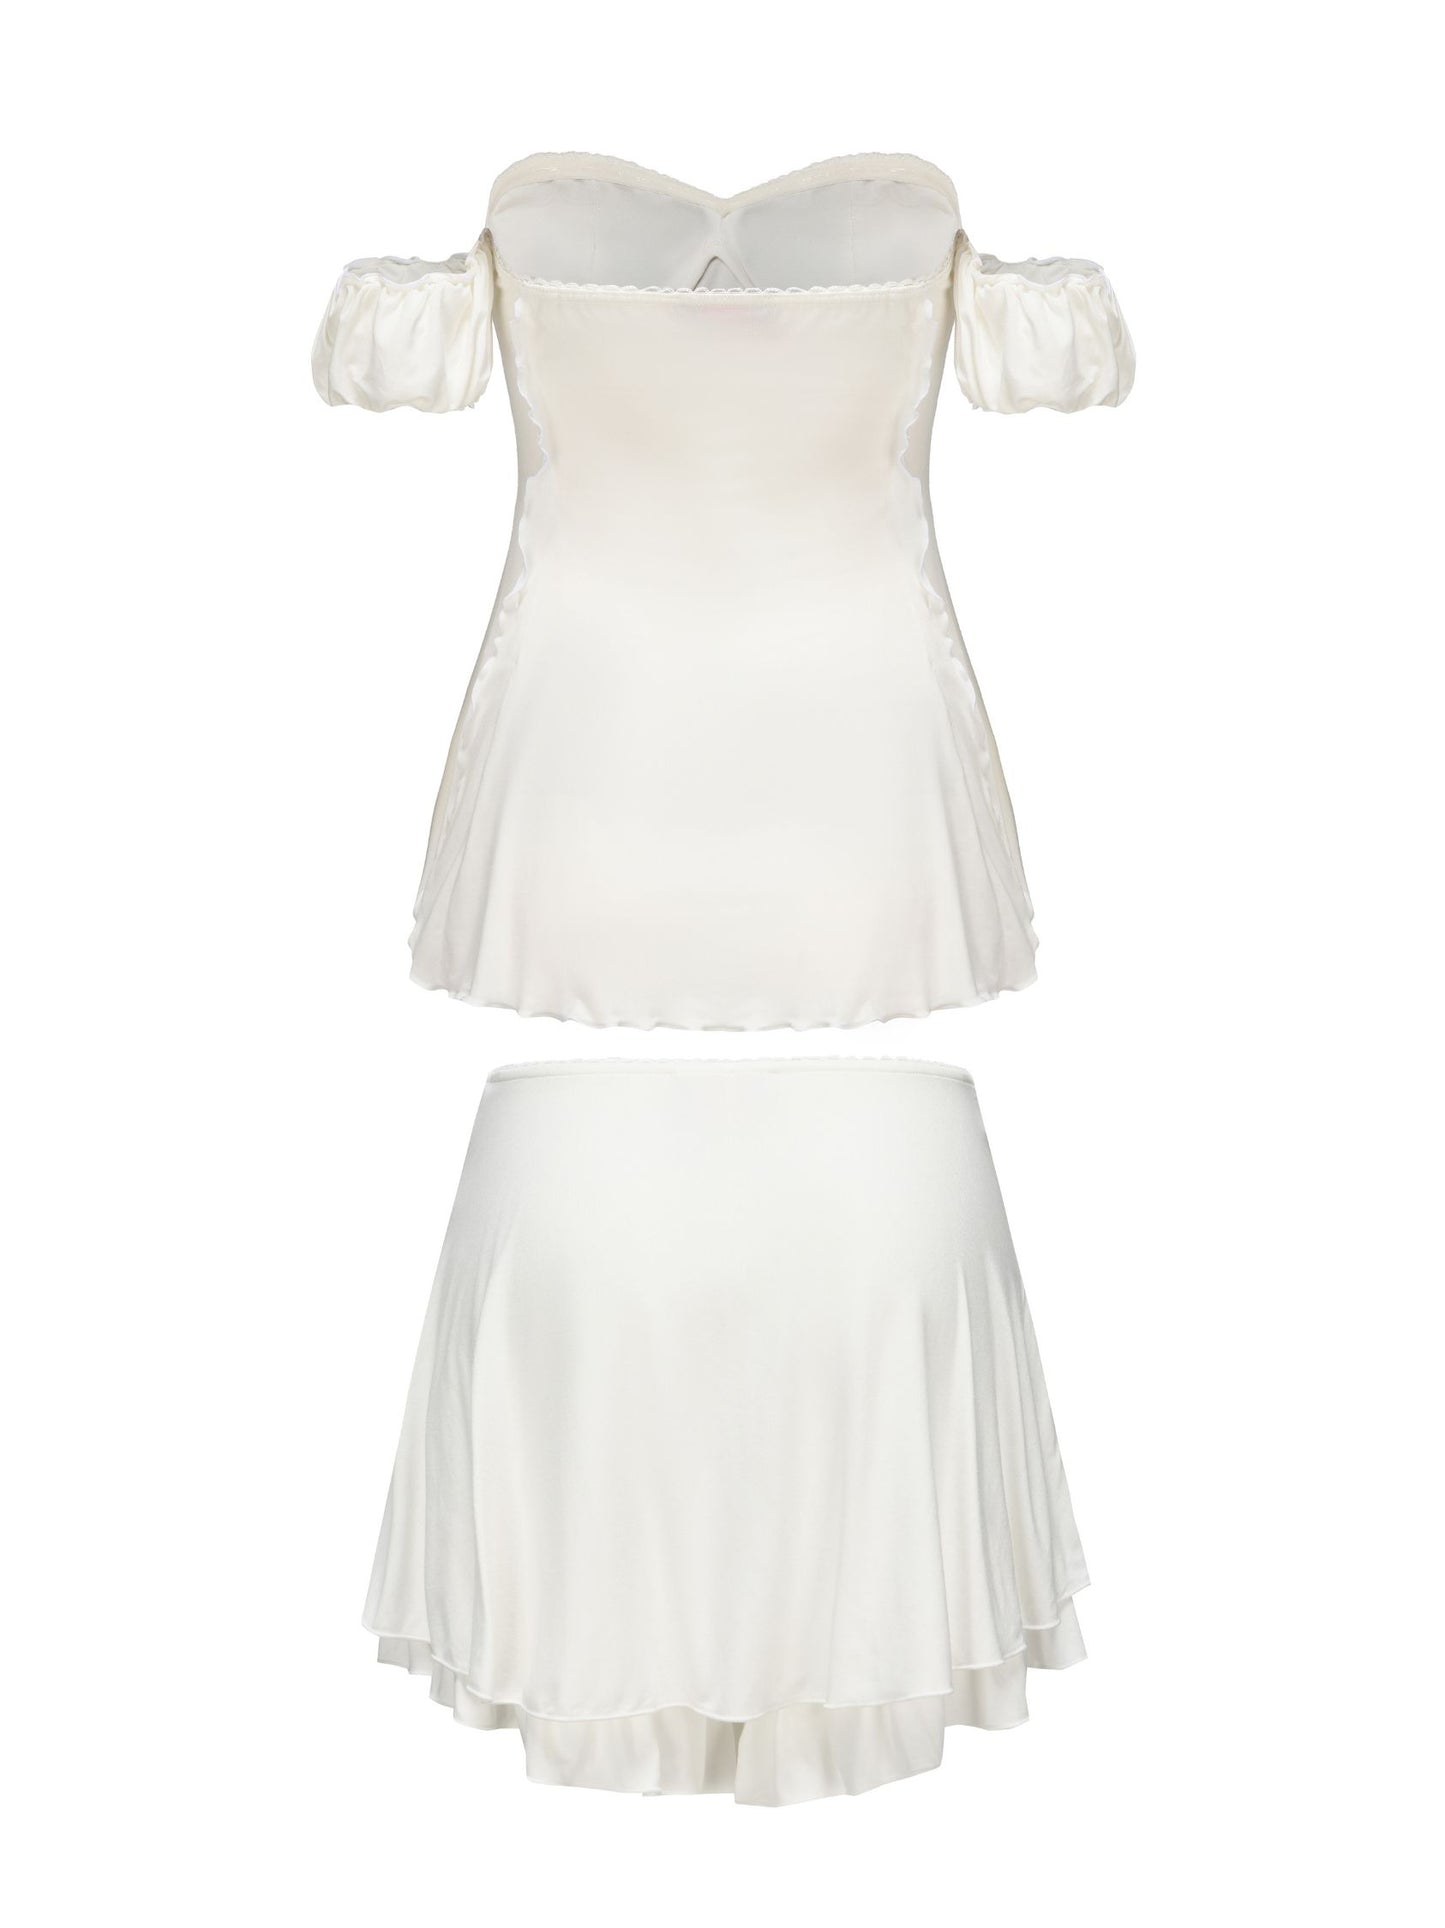 Heidi Top + Skirt  (White)